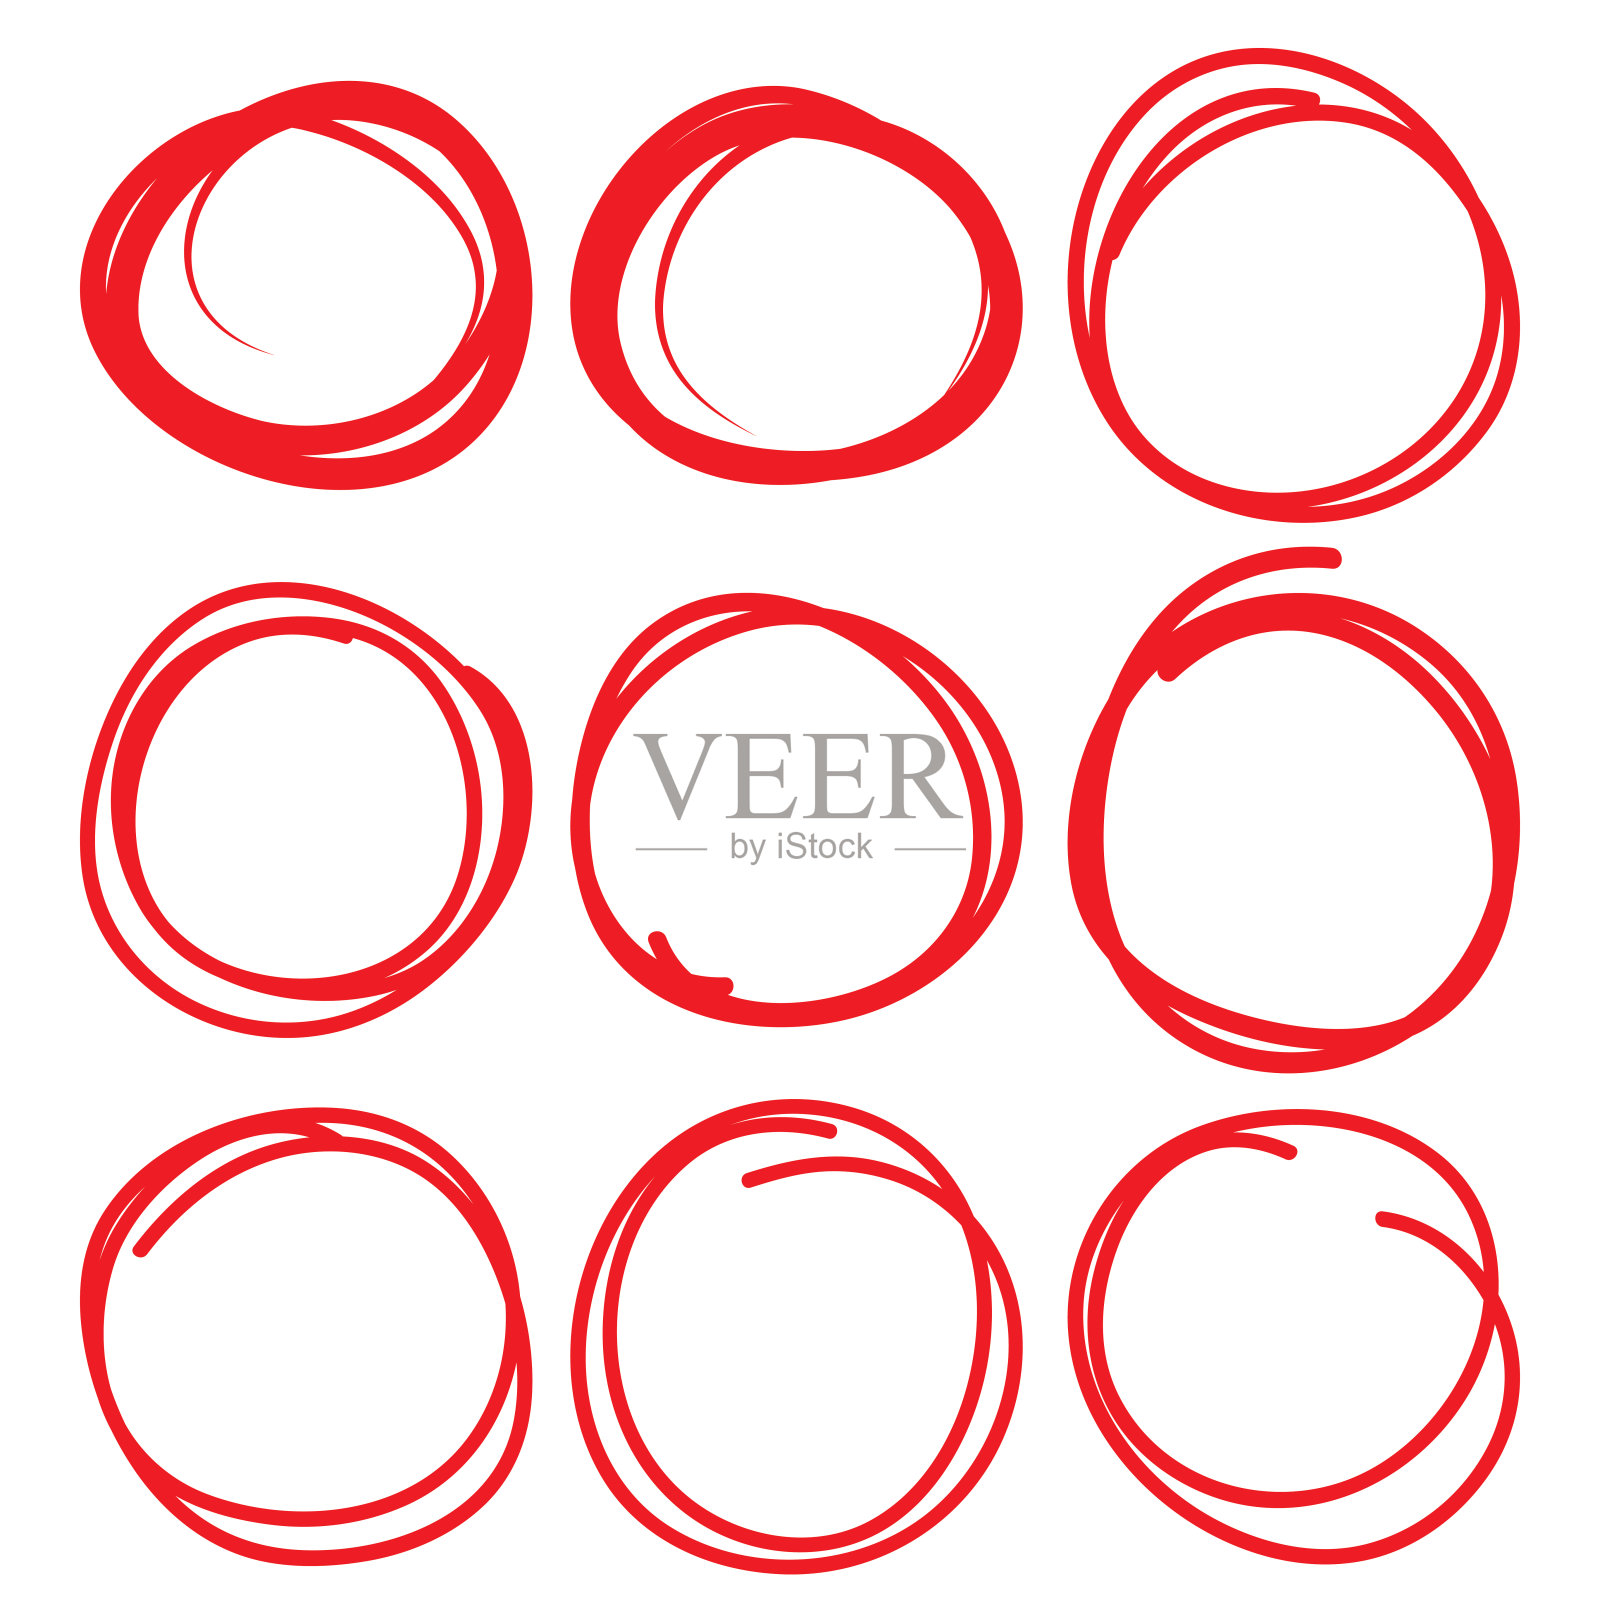 高亮元素，红色圆圈设置，收集校正和手绘圆圈。插画图片素材